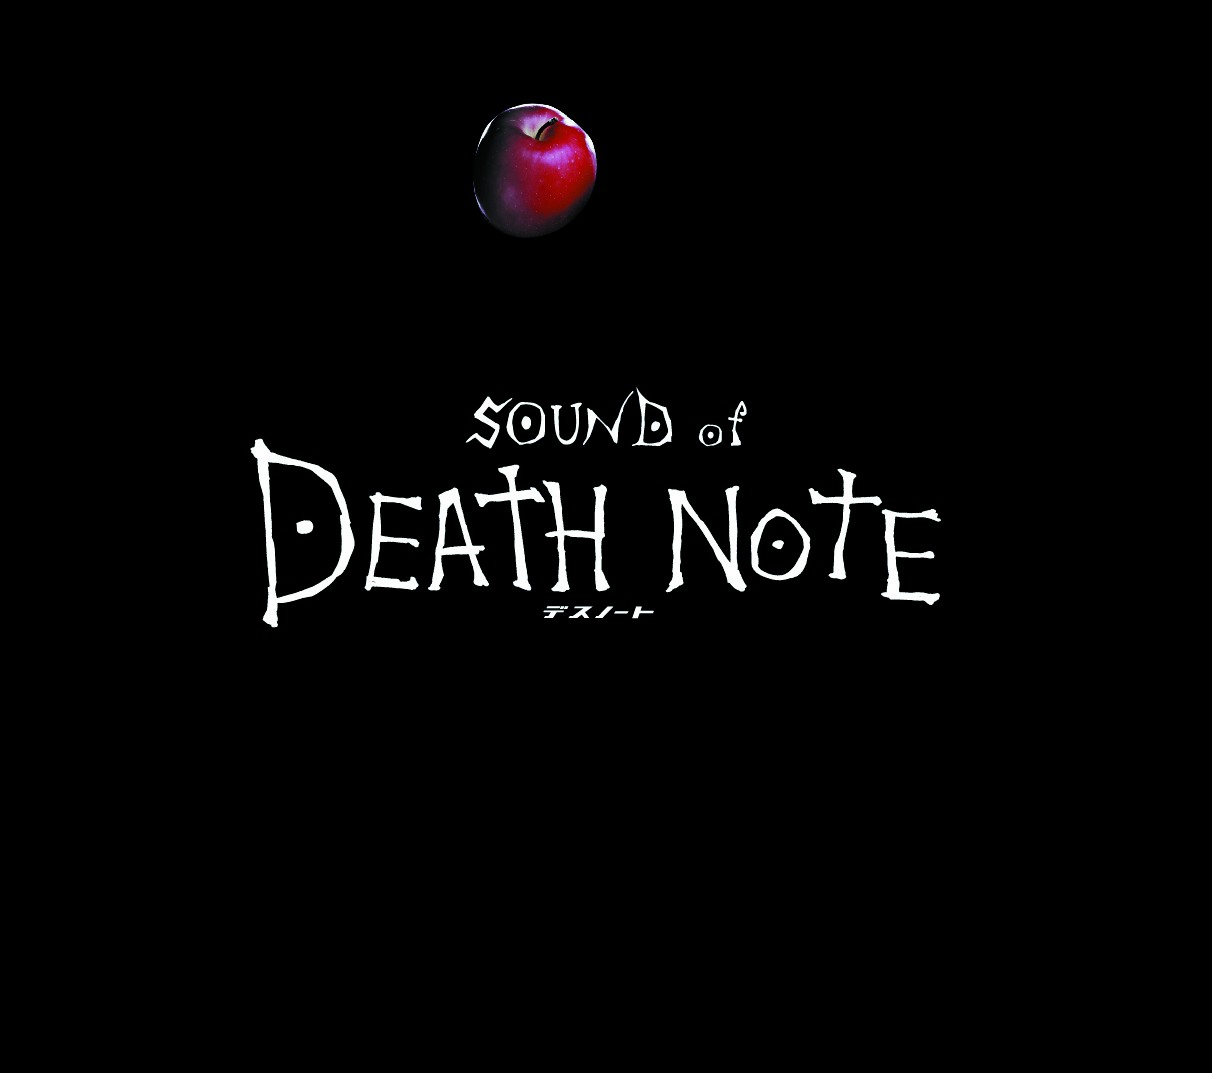 Тетрадь смерти саундтрек. Death Note. Death Note OST. Тетрадь смерти обложка. Тетрадь смерти надпись.